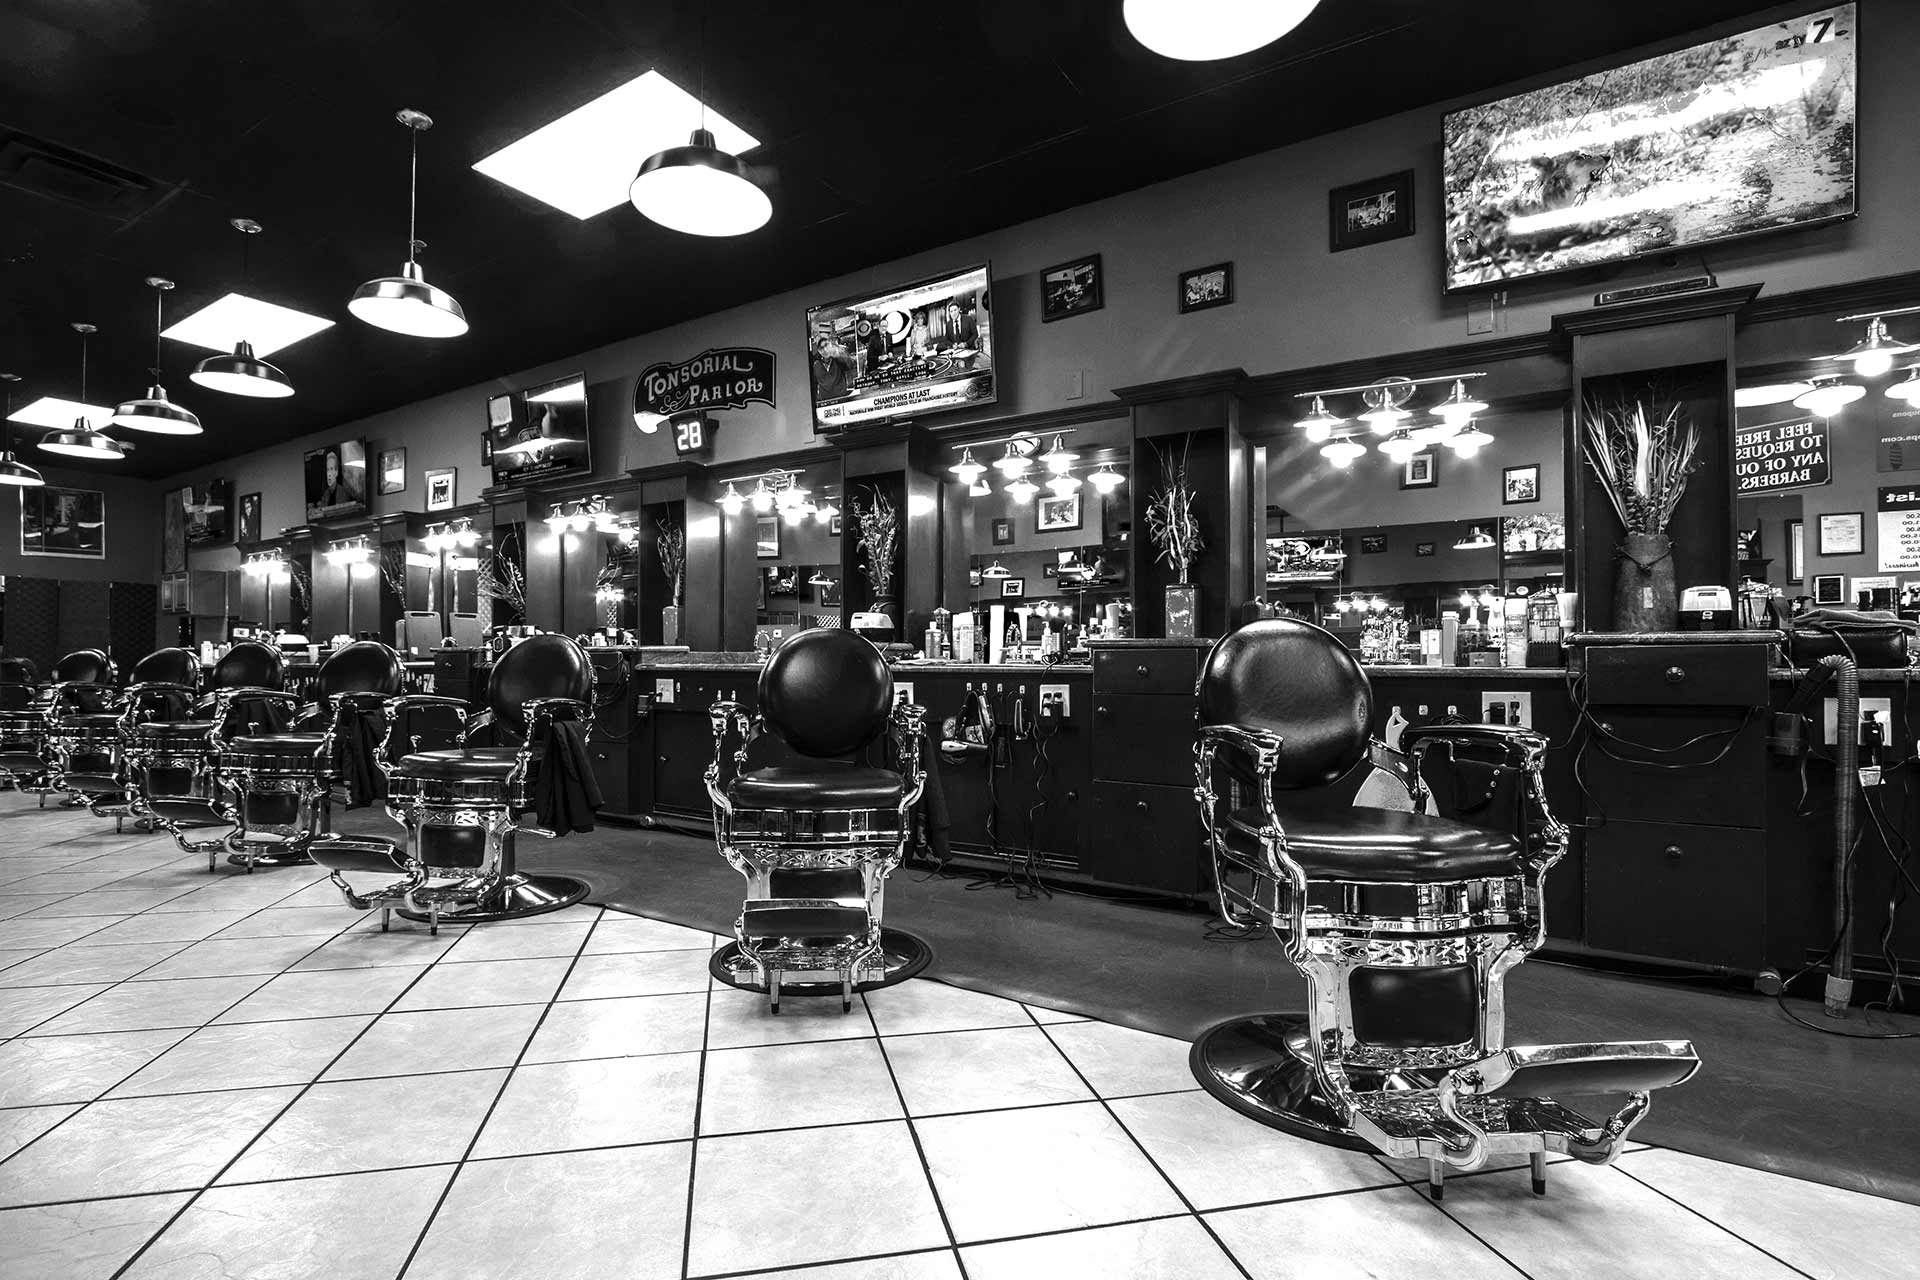 Best Barbershop in Mesa - Mikes Barbershops Mesa, AZ